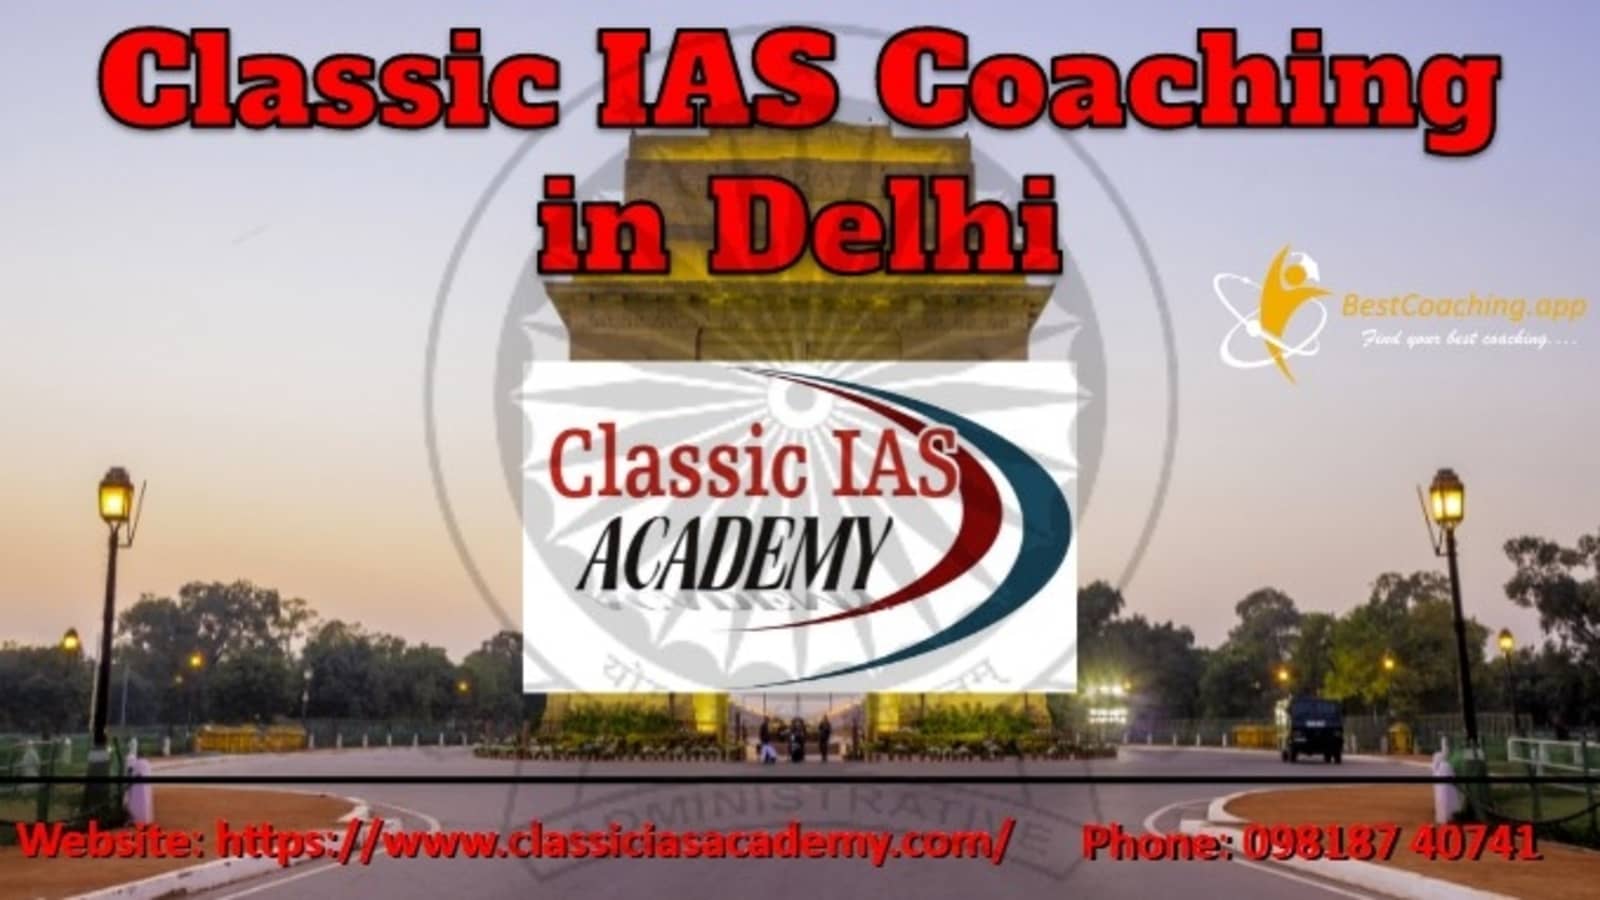 Classic IAS Coaching in Delhi